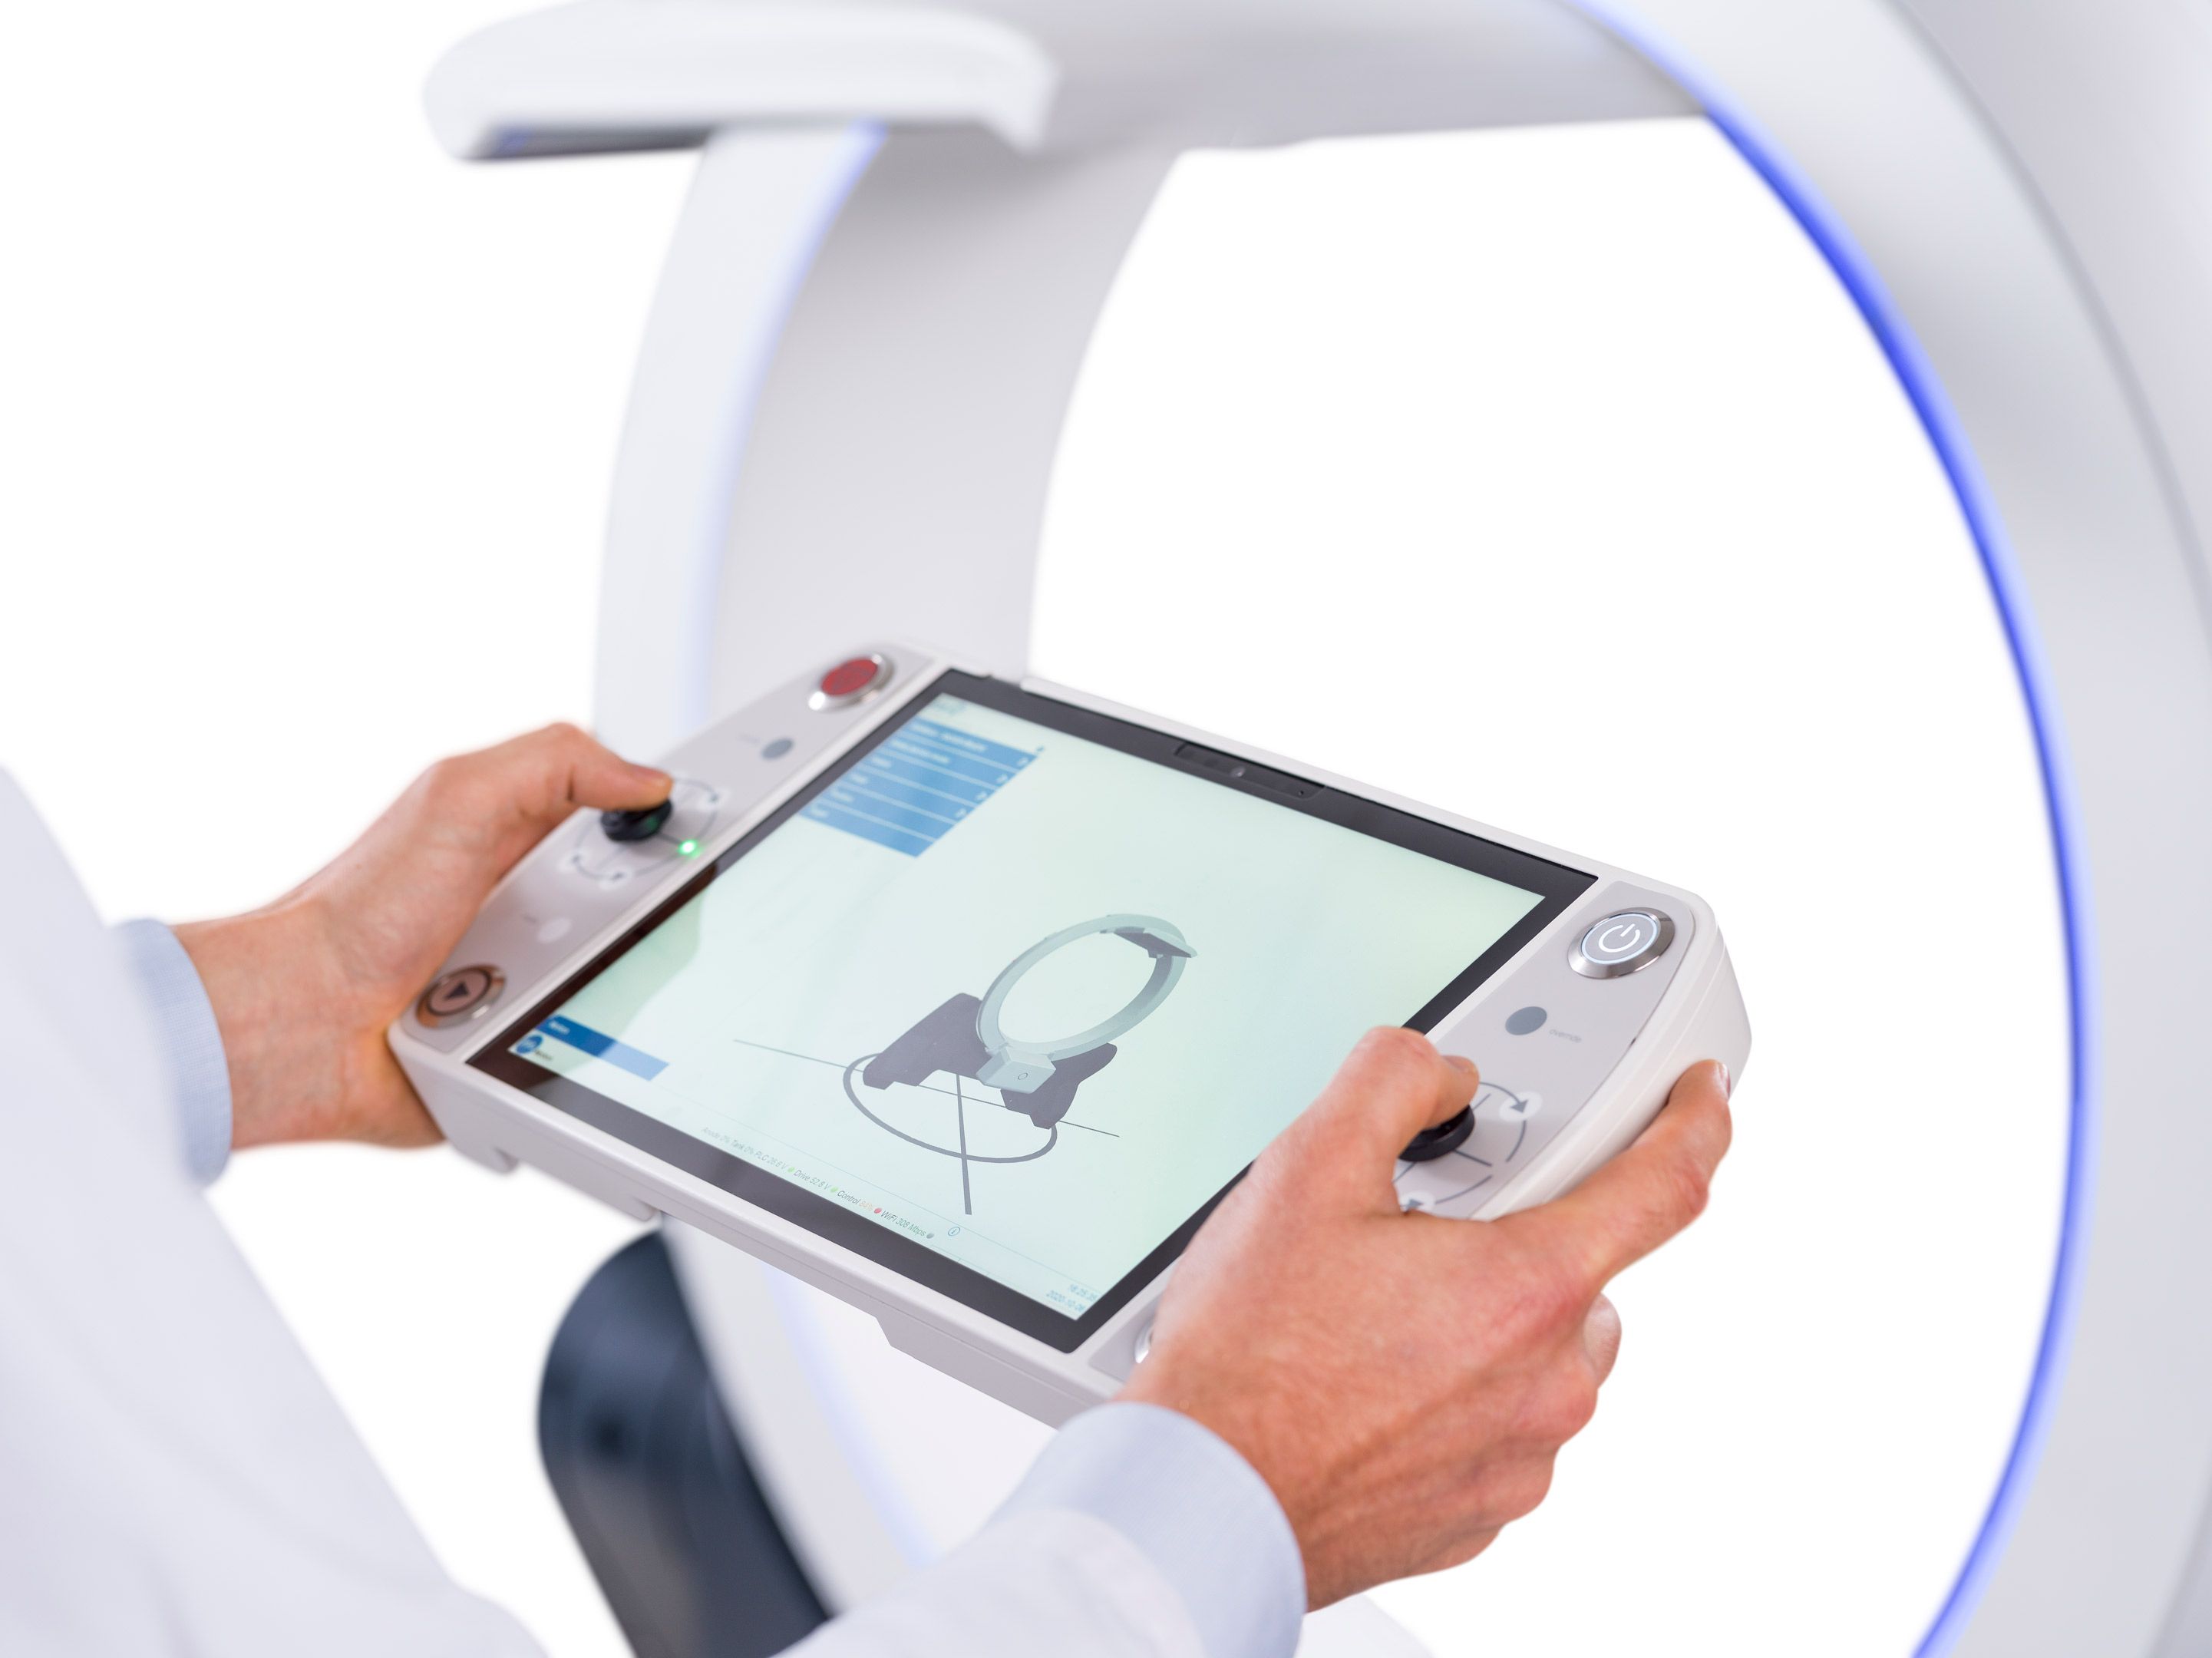 Elekta ImagingRing advanced mobile CT scanner in use with Elekta Studio